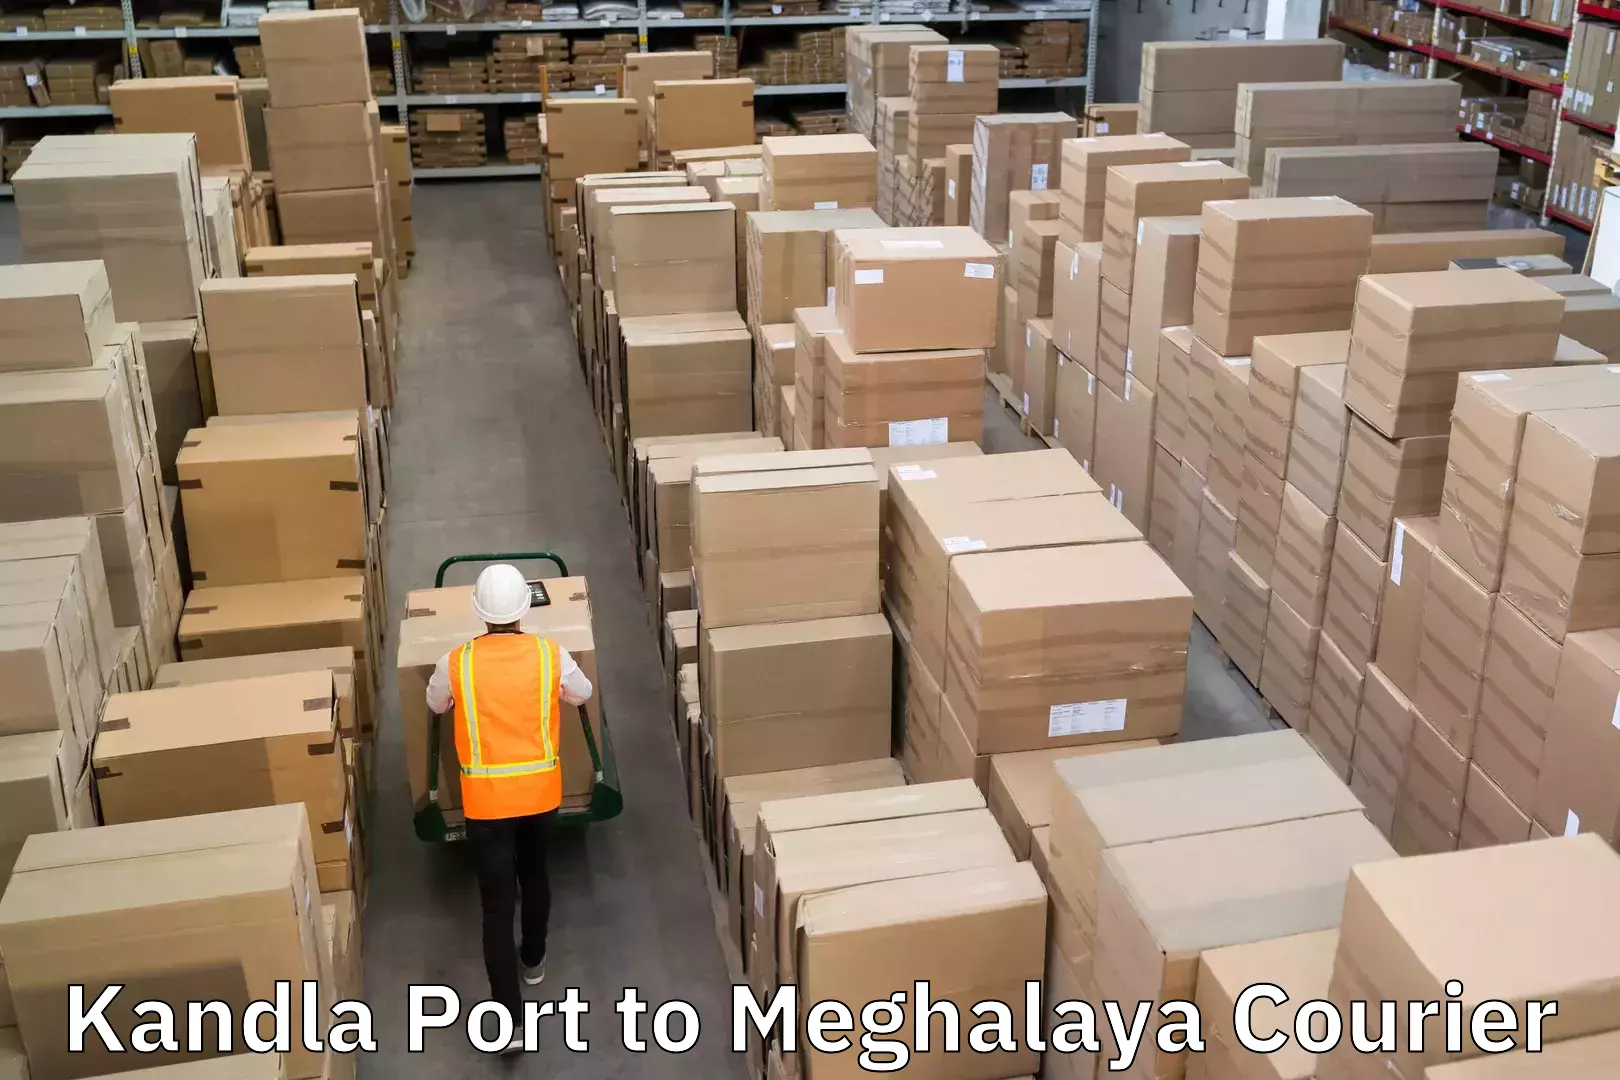 Premium courier services Kandla Port to Dkhiah West